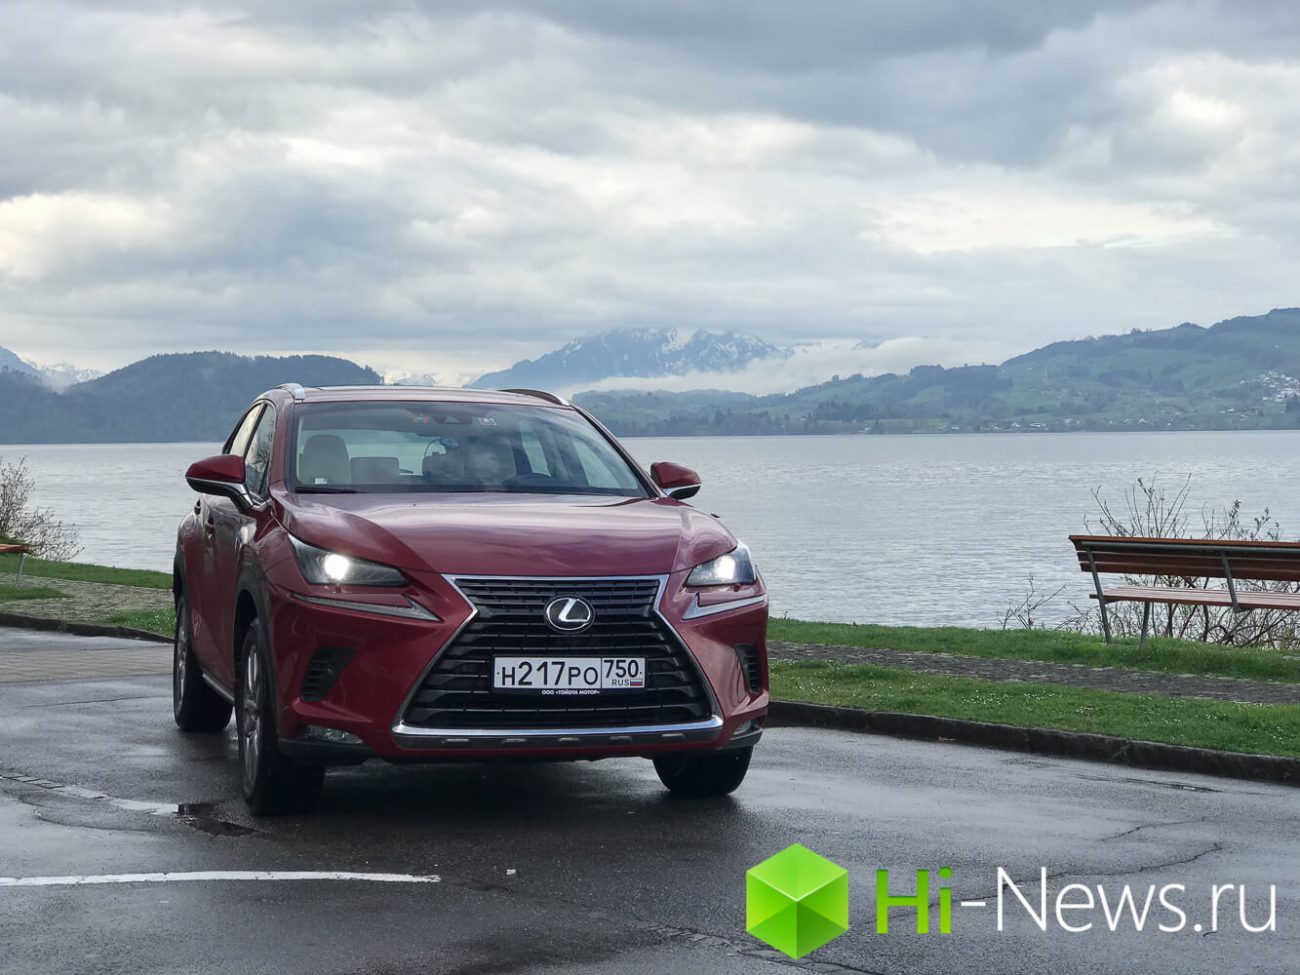 Från Zürich till Milano: testa köra uppdaterad Lexus NX